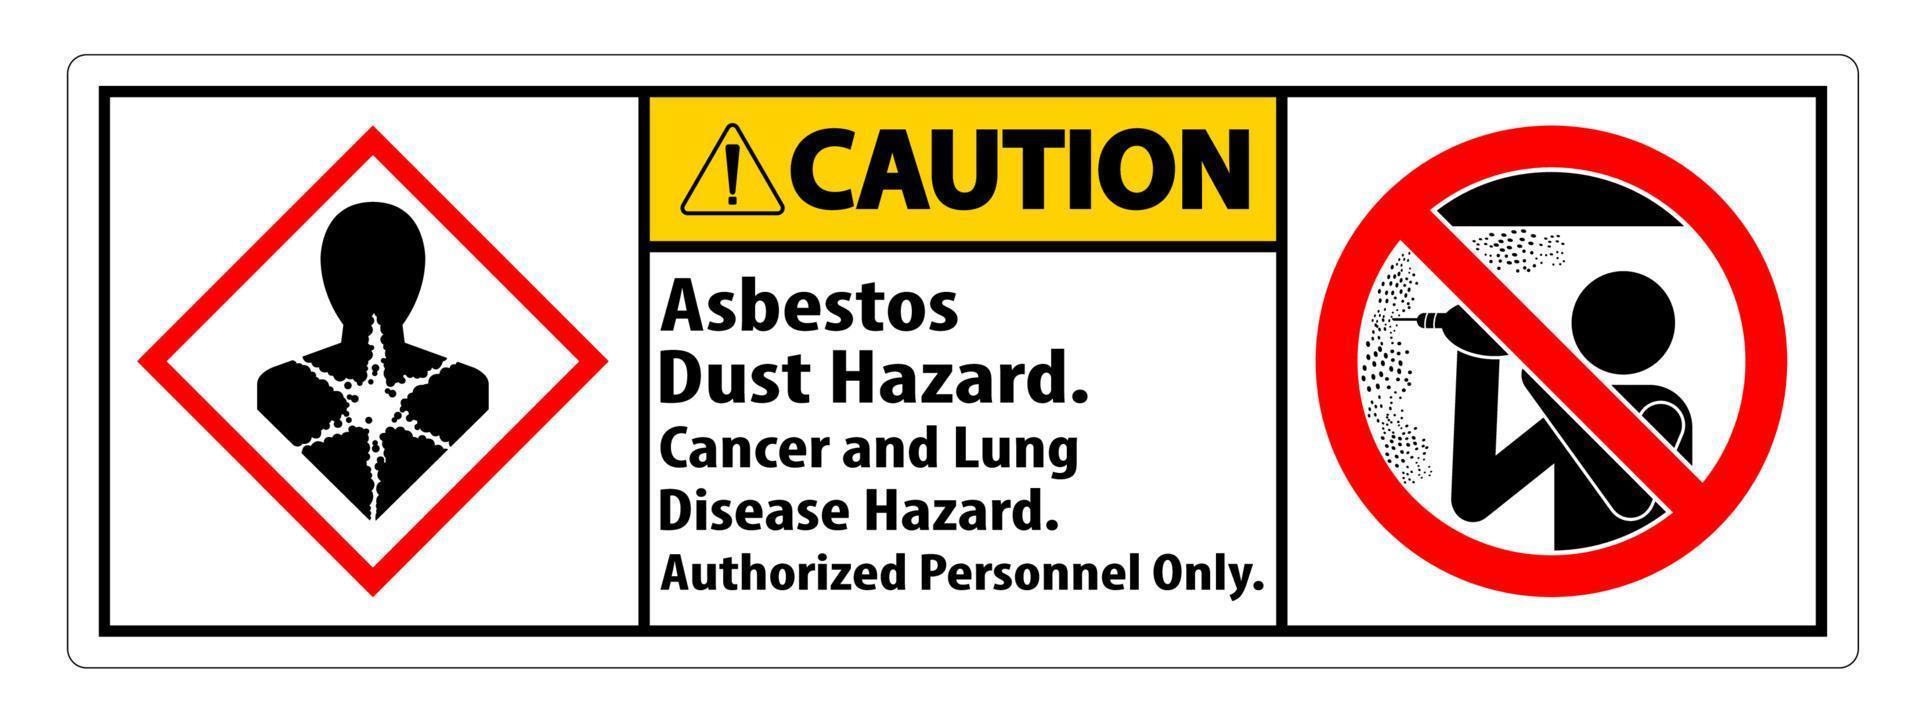 precaución etiqueta de seguridad, peligro de polvo de asbesto, cáncer y peligro de enfermedad pulmonar solo personal autorizado vector